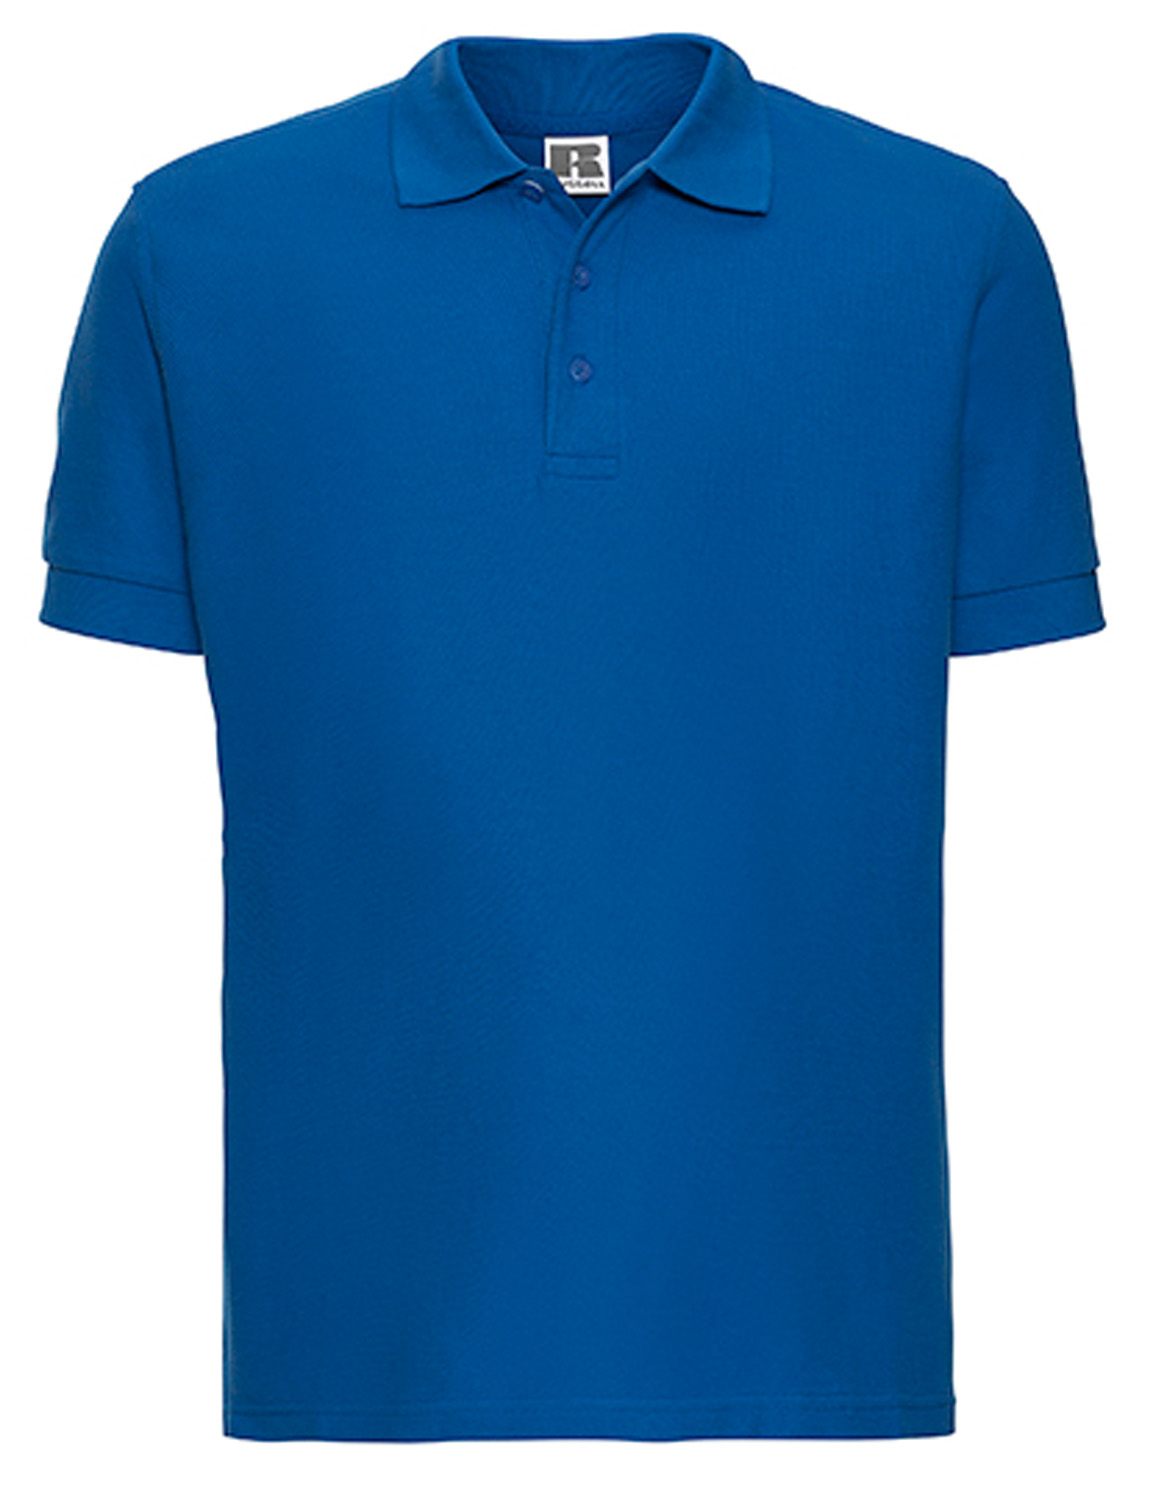 Herren Poloshirt kurzarm Russell Ultimate Cotton R-577M-0 Azure Blue